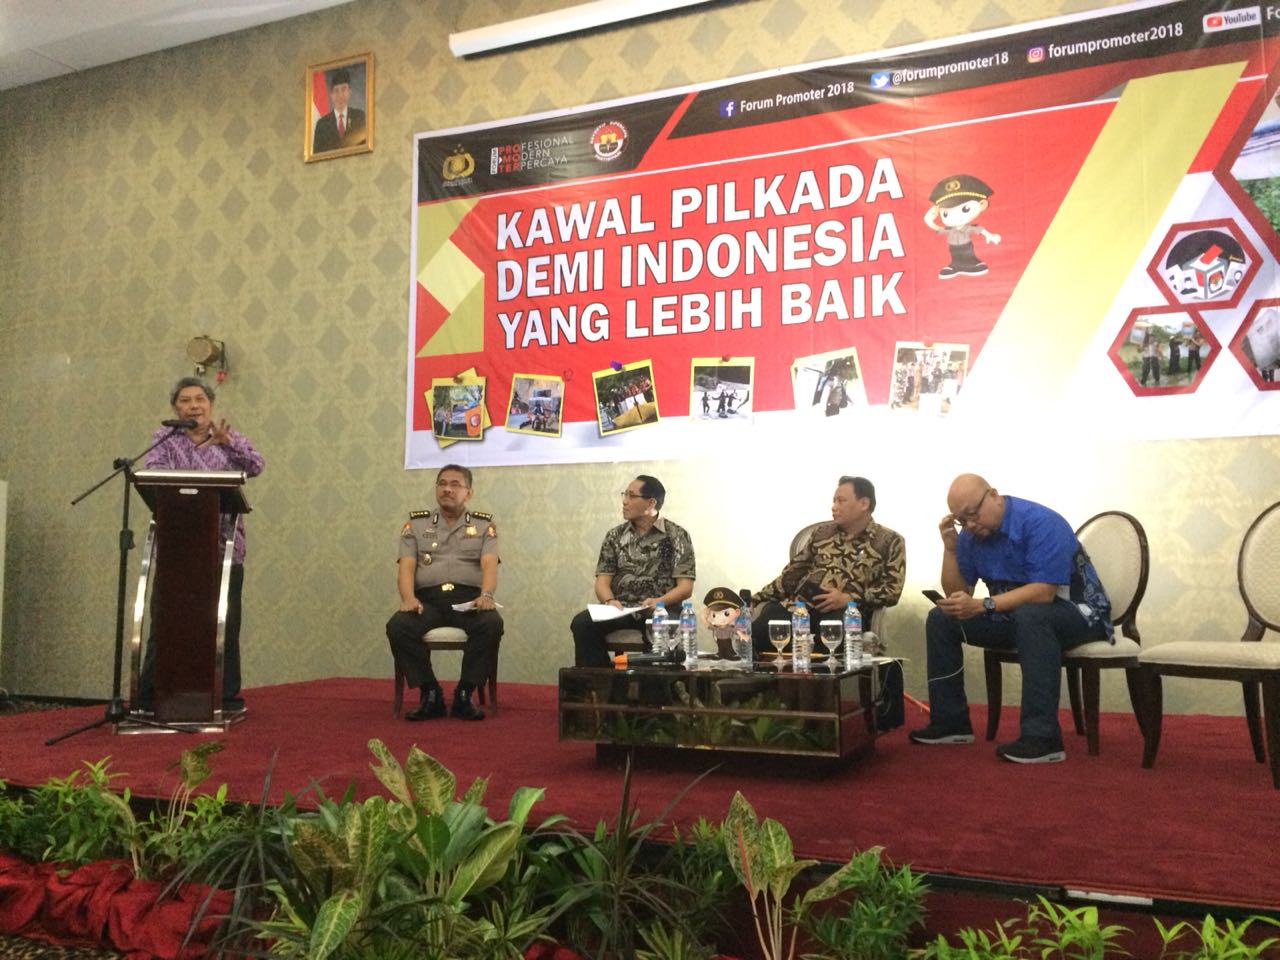 Sebanyak 171 daerah (17 propinsi, 39 kota dan 115 kabupaten) telah menjalankan proses pilkada. Polri bertekad mengawal proses yang berjalan dengan total demi kondisi Indonesia yang lebih baik.